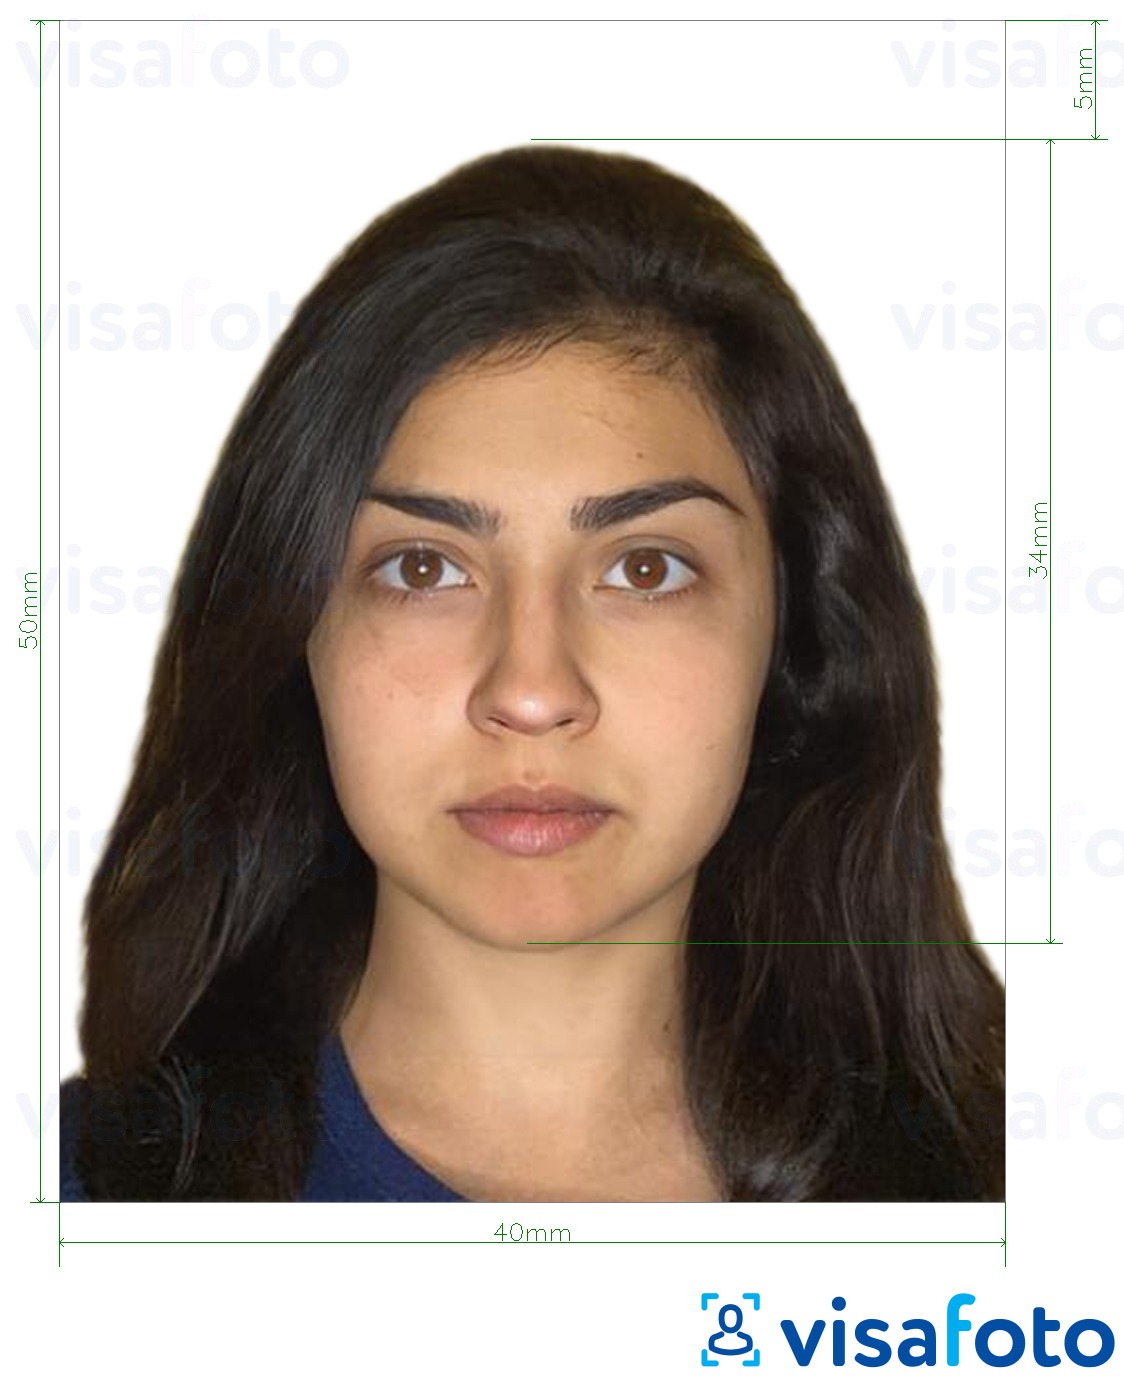 ფოტოს მაგალითი ბოლივიის პასპორტი 4x5 სმ -სთვის ზუსტი ზომის სპეციფიკაციით